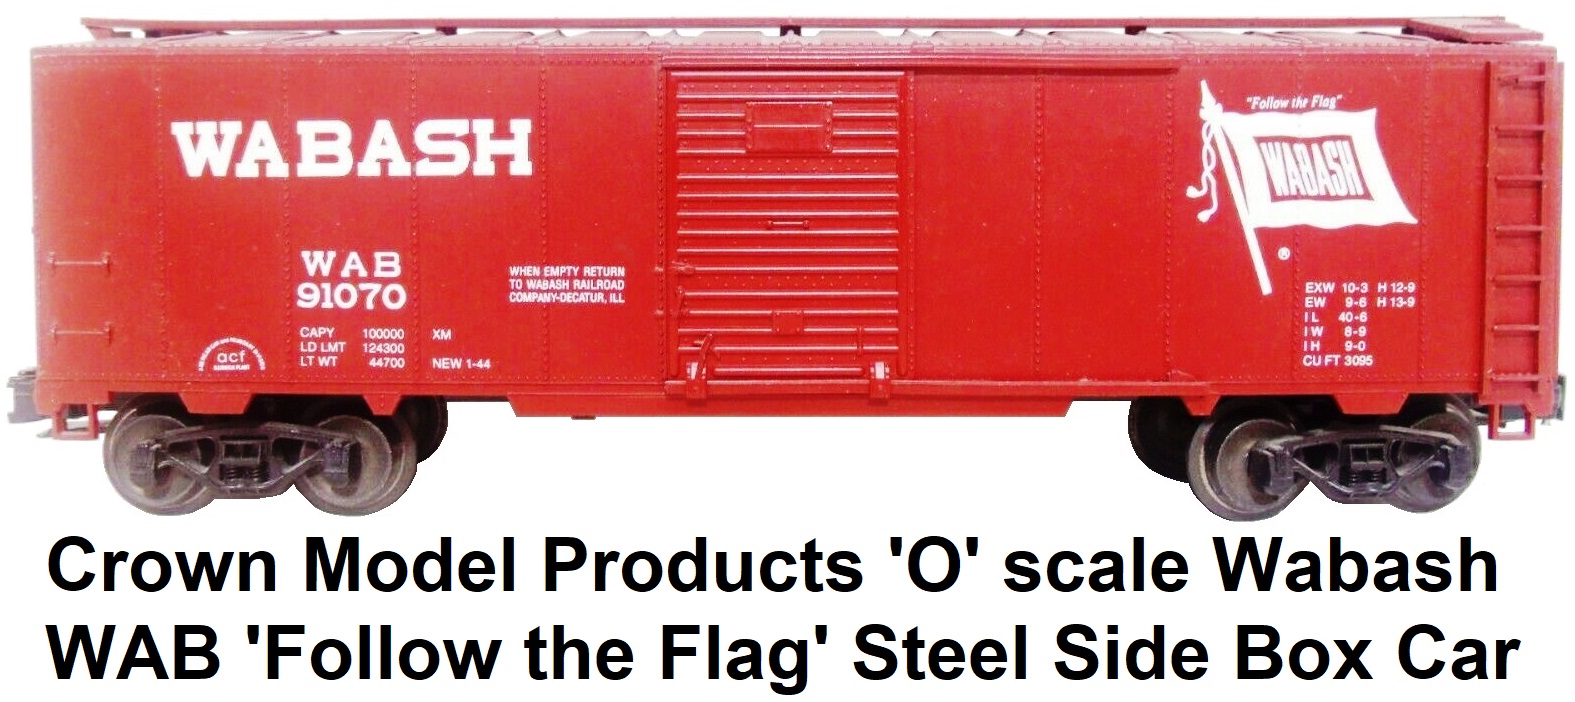 Crown Model Products 'O' scale WAB Wabash 40' Steel Side Box Car #91070